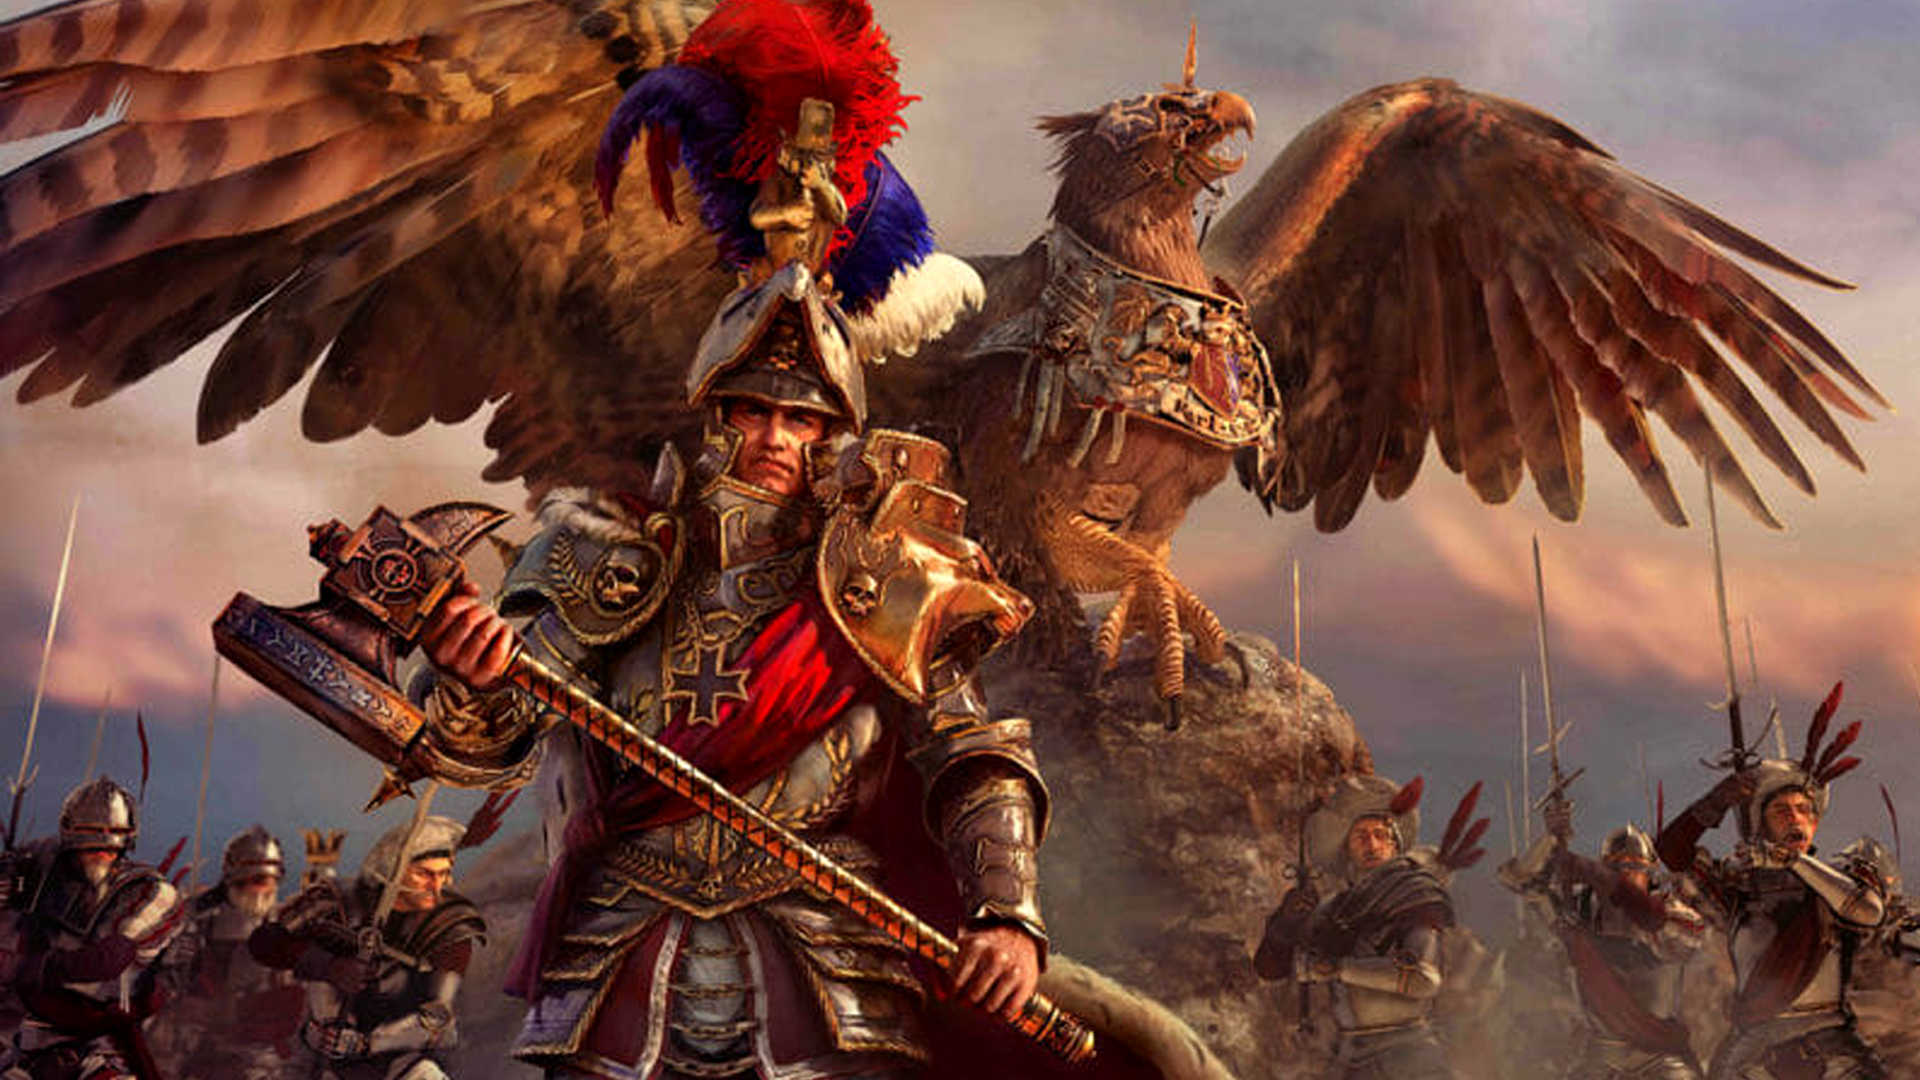 Du kan hitta återupplivningen av Emperor Total War Warhammer 2 gratis